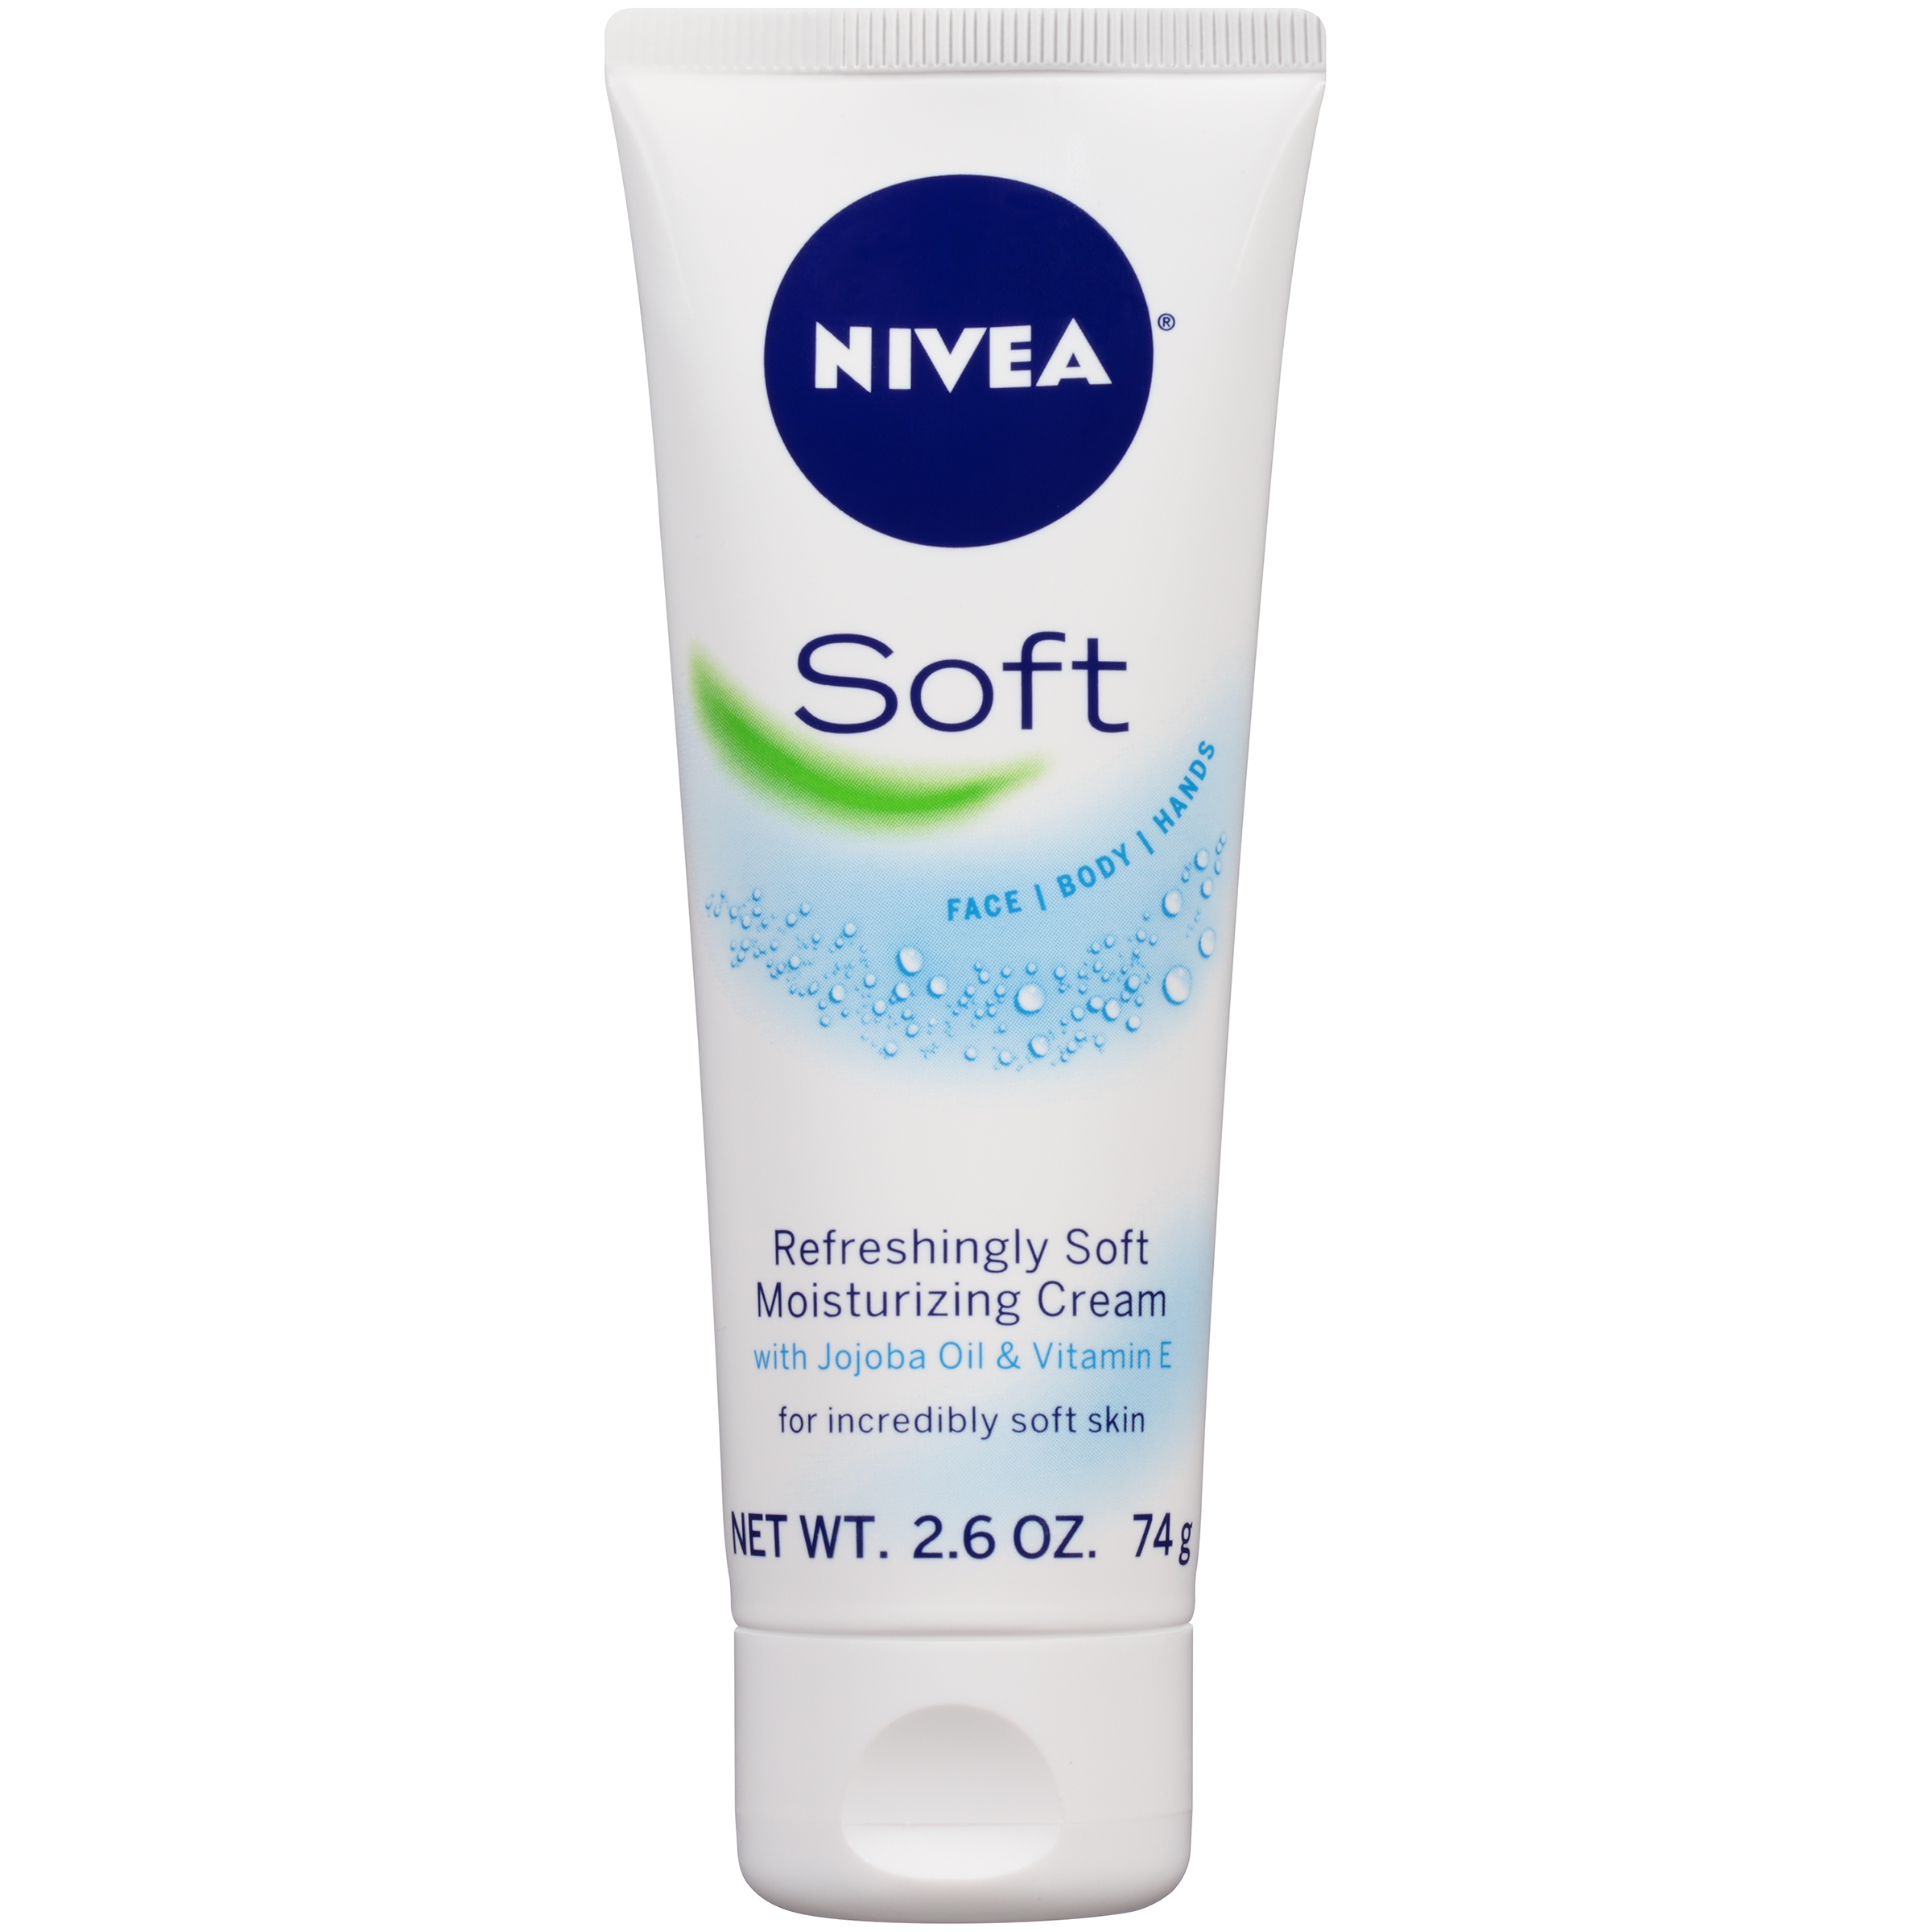 Nivea Soft Refreshingly Soft Moisturizing Creme, 2.6 oz (74 g)